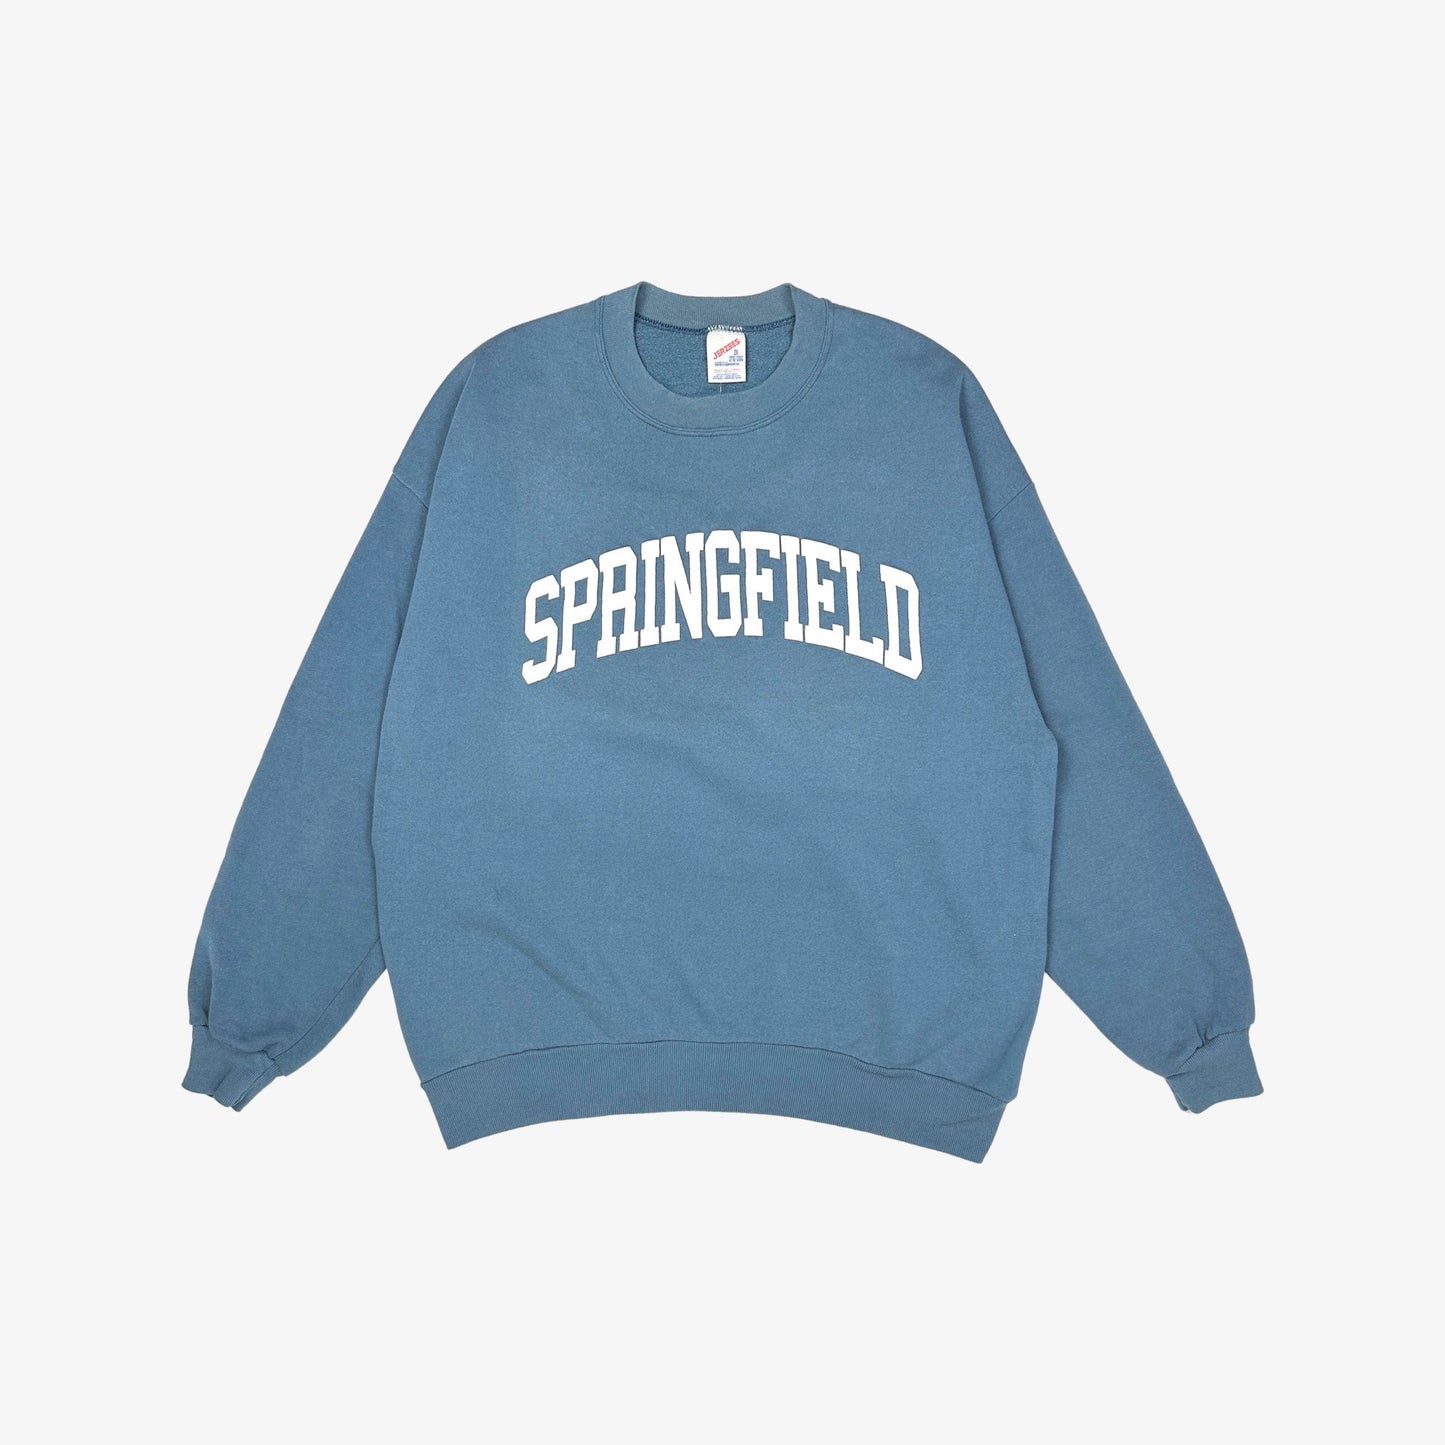 (XL) College Town Sweatshirt